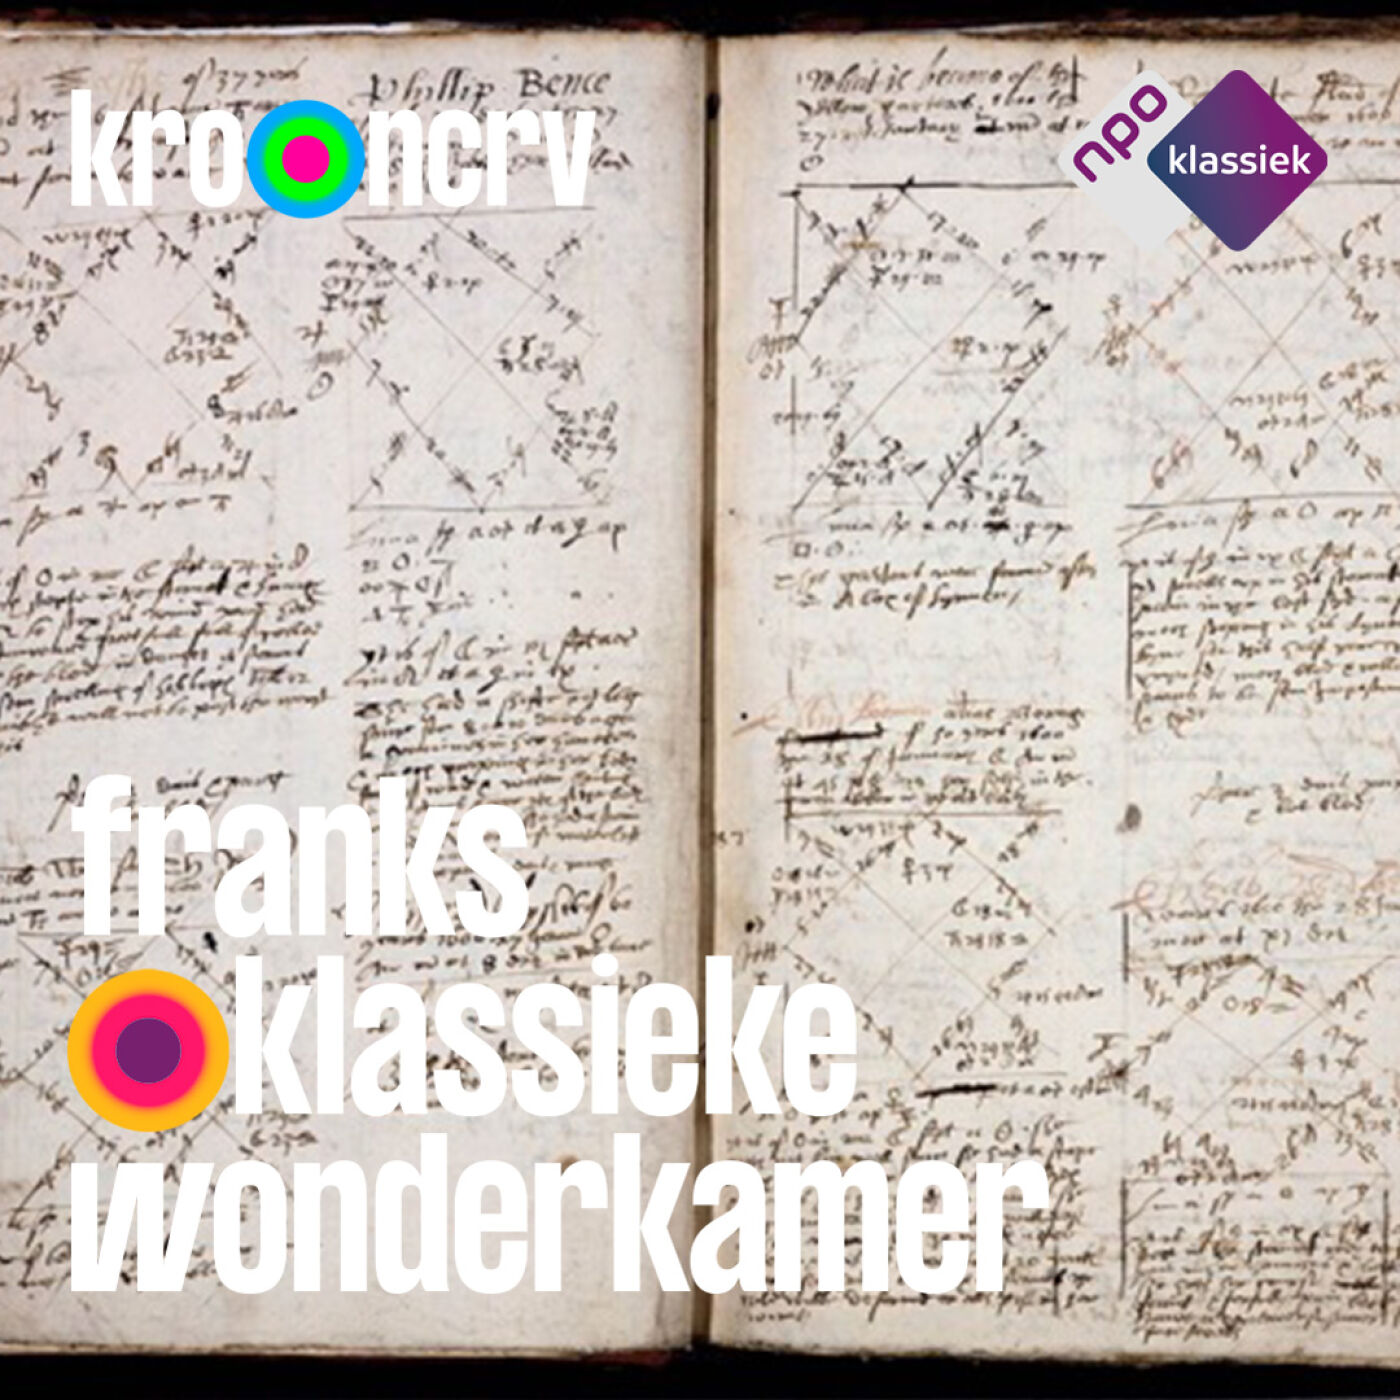 #23 - Franks Klassieke Wonderkamer - ‘Sweet Musicke’